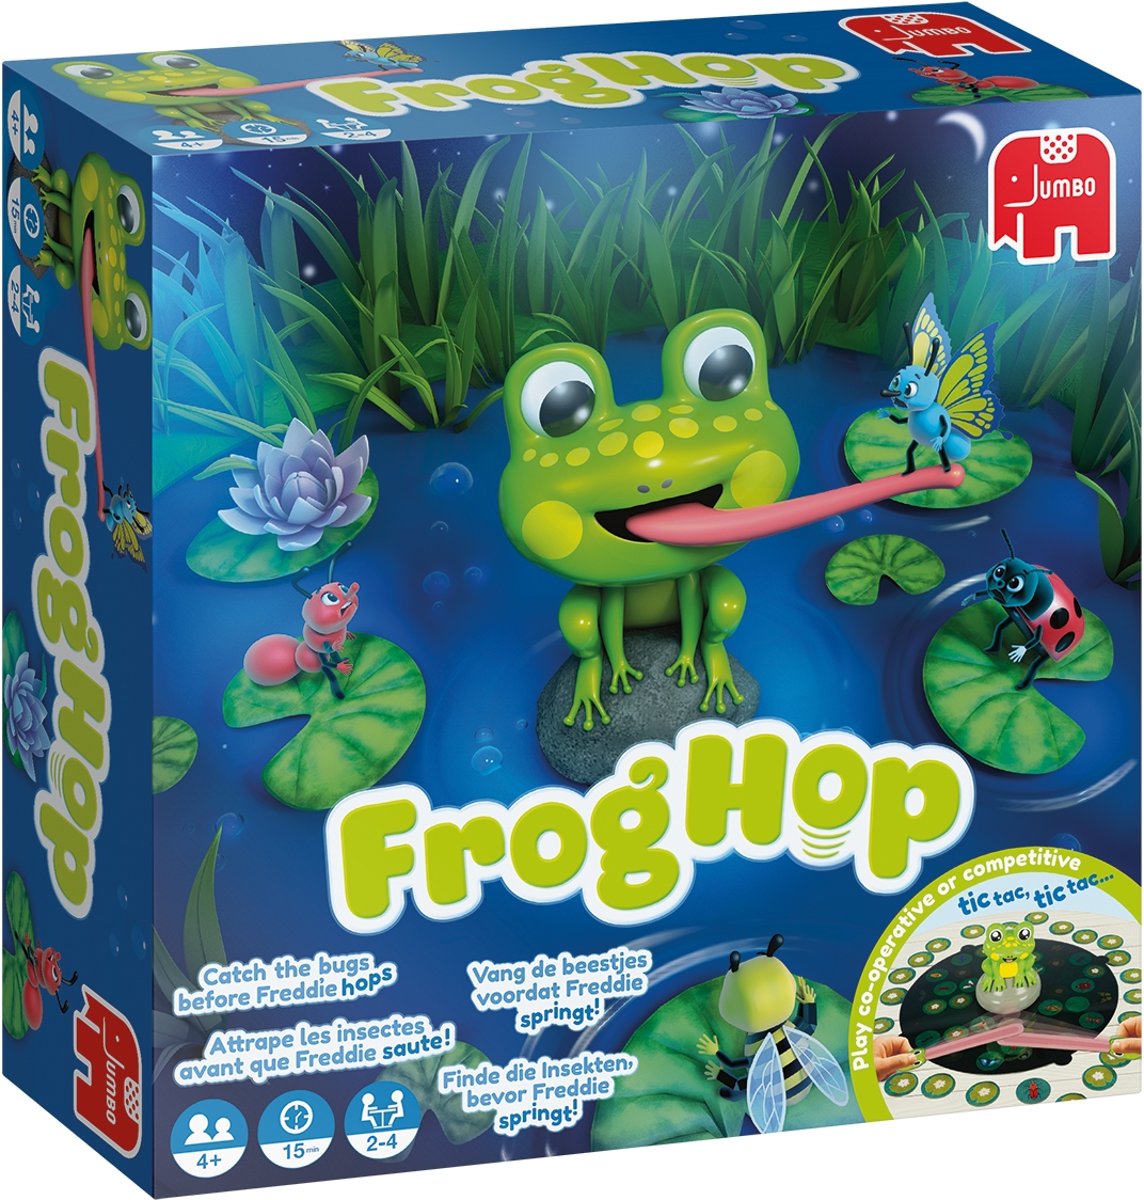   Frog Hop Bordspel NL